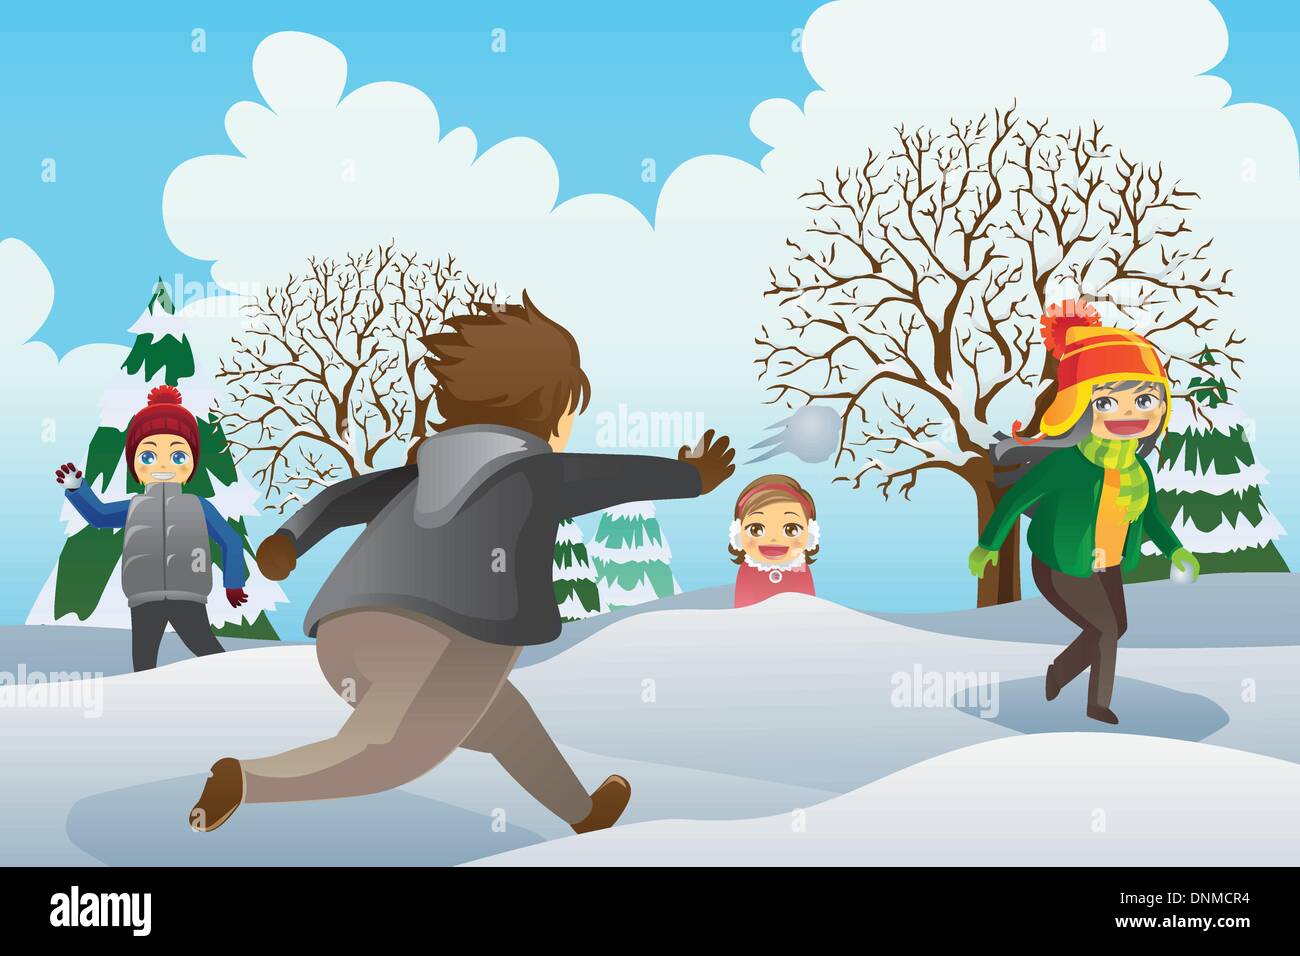 Eine Vektor-Illustration von Kindern spielen Schneebälle im freien Stock Vektor